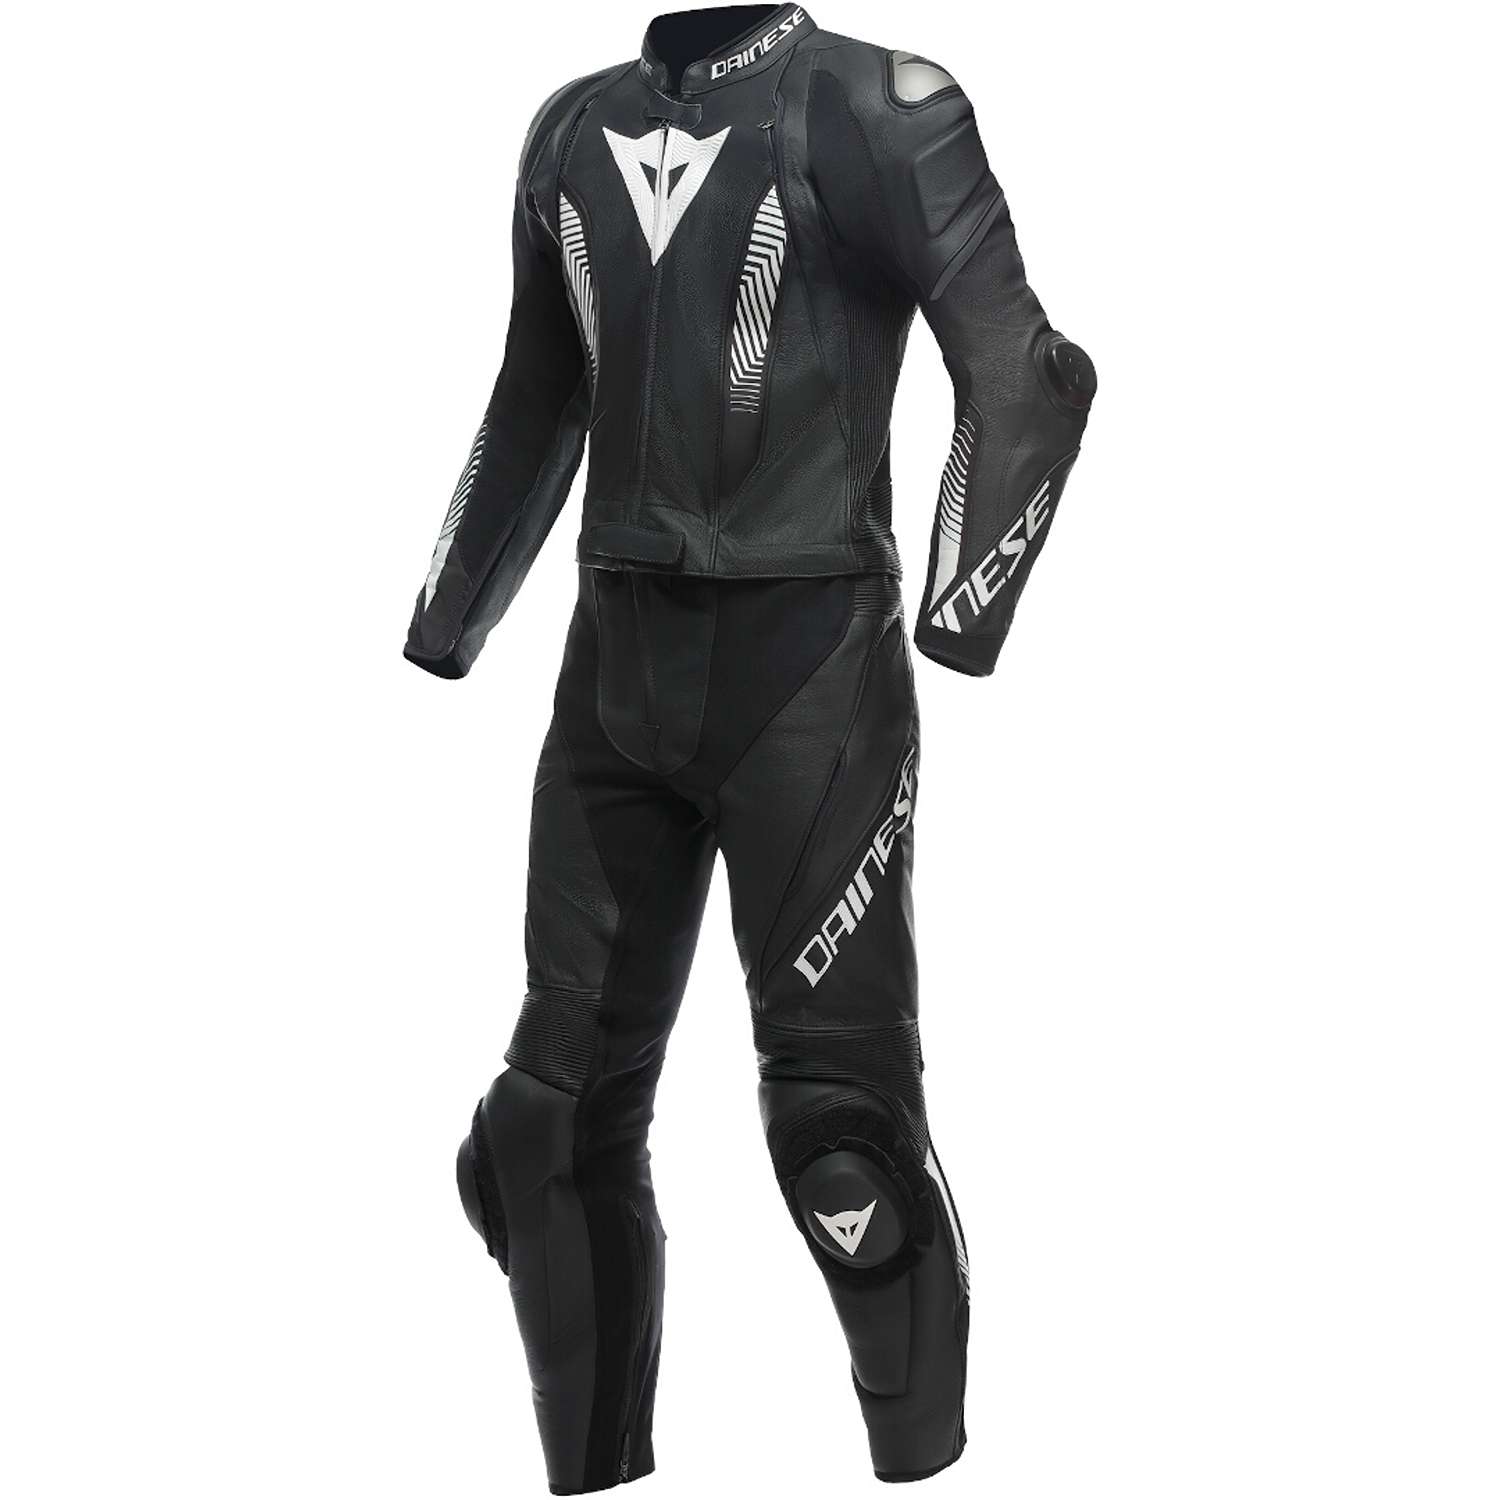 Image of Dainese Laguna Seca 5 2Pcs Leather Suit Black White Size 44 ID 8051019497031